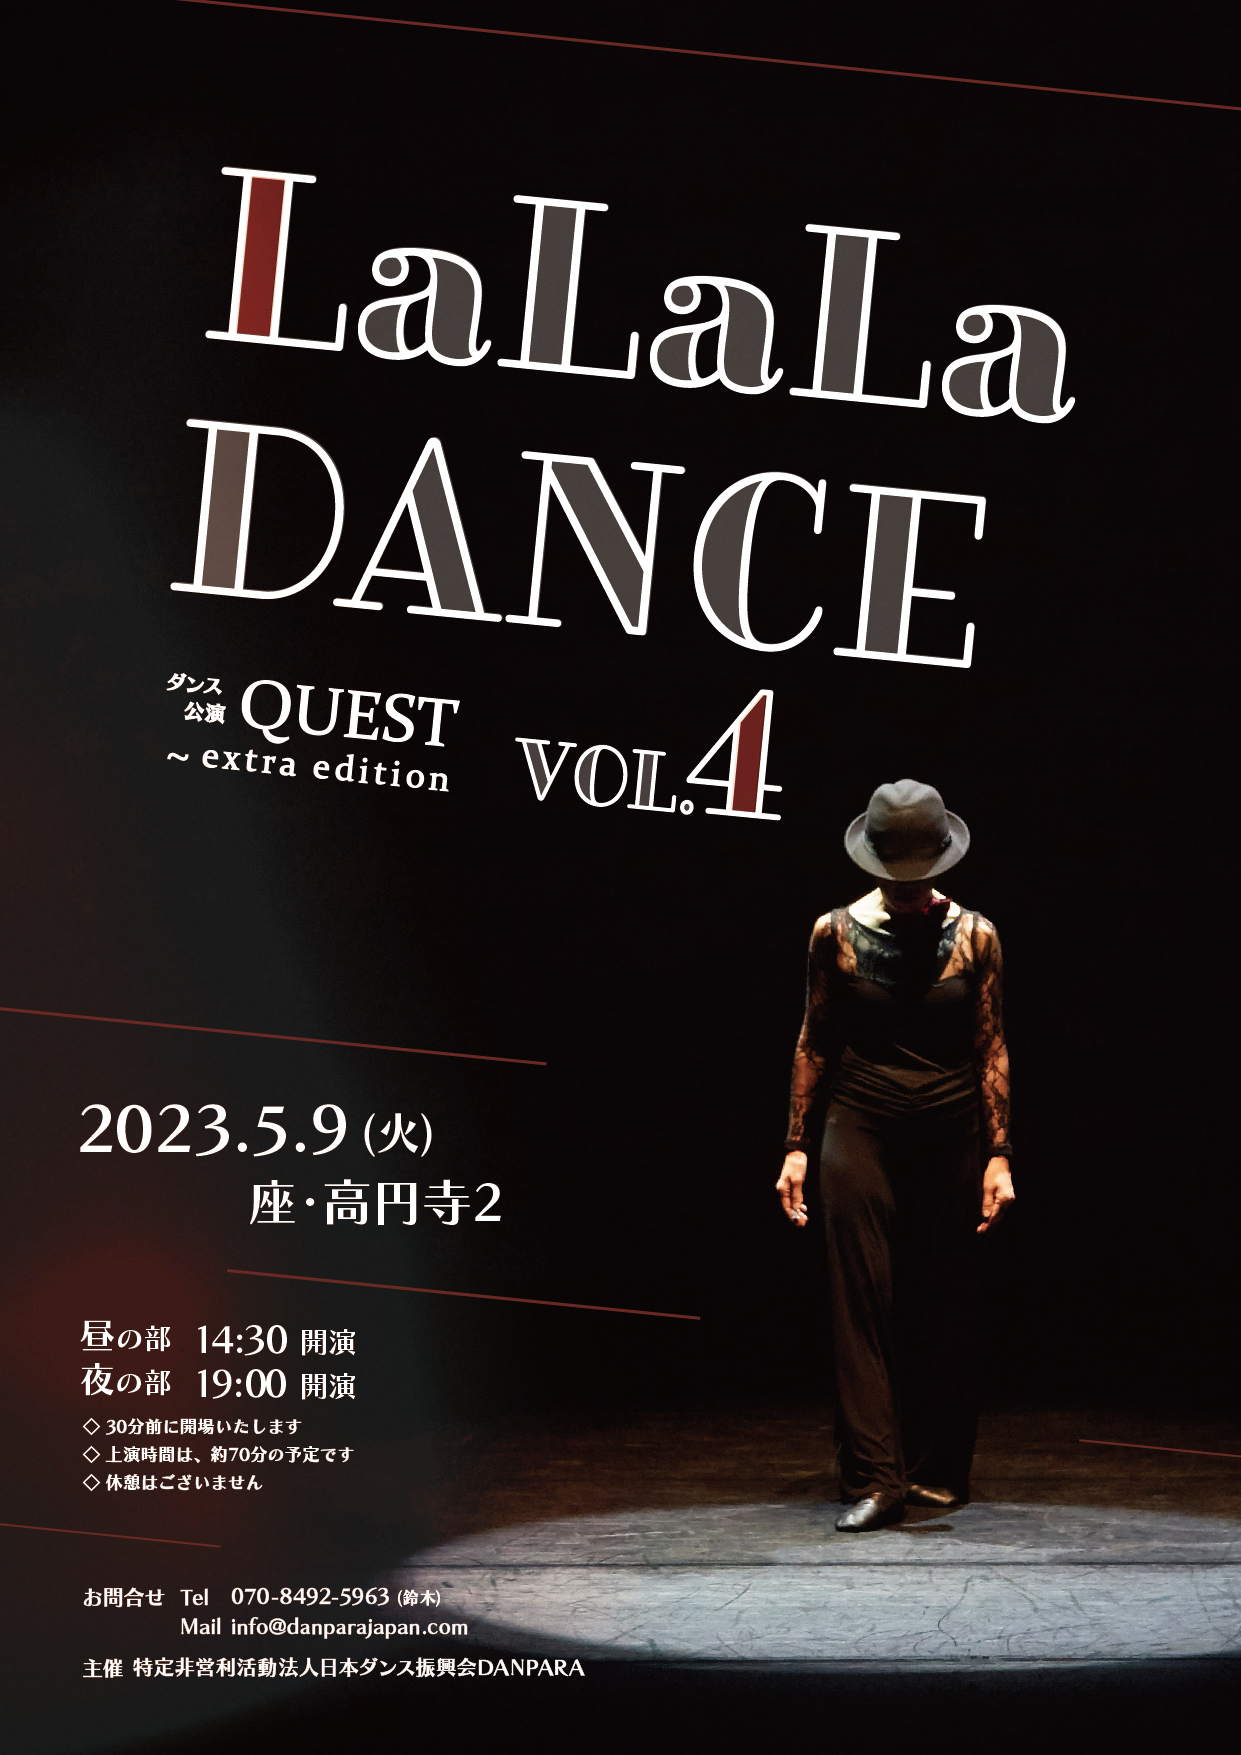 ダンス公演QUEST extra edition～LaLaLa DANCE vol.4